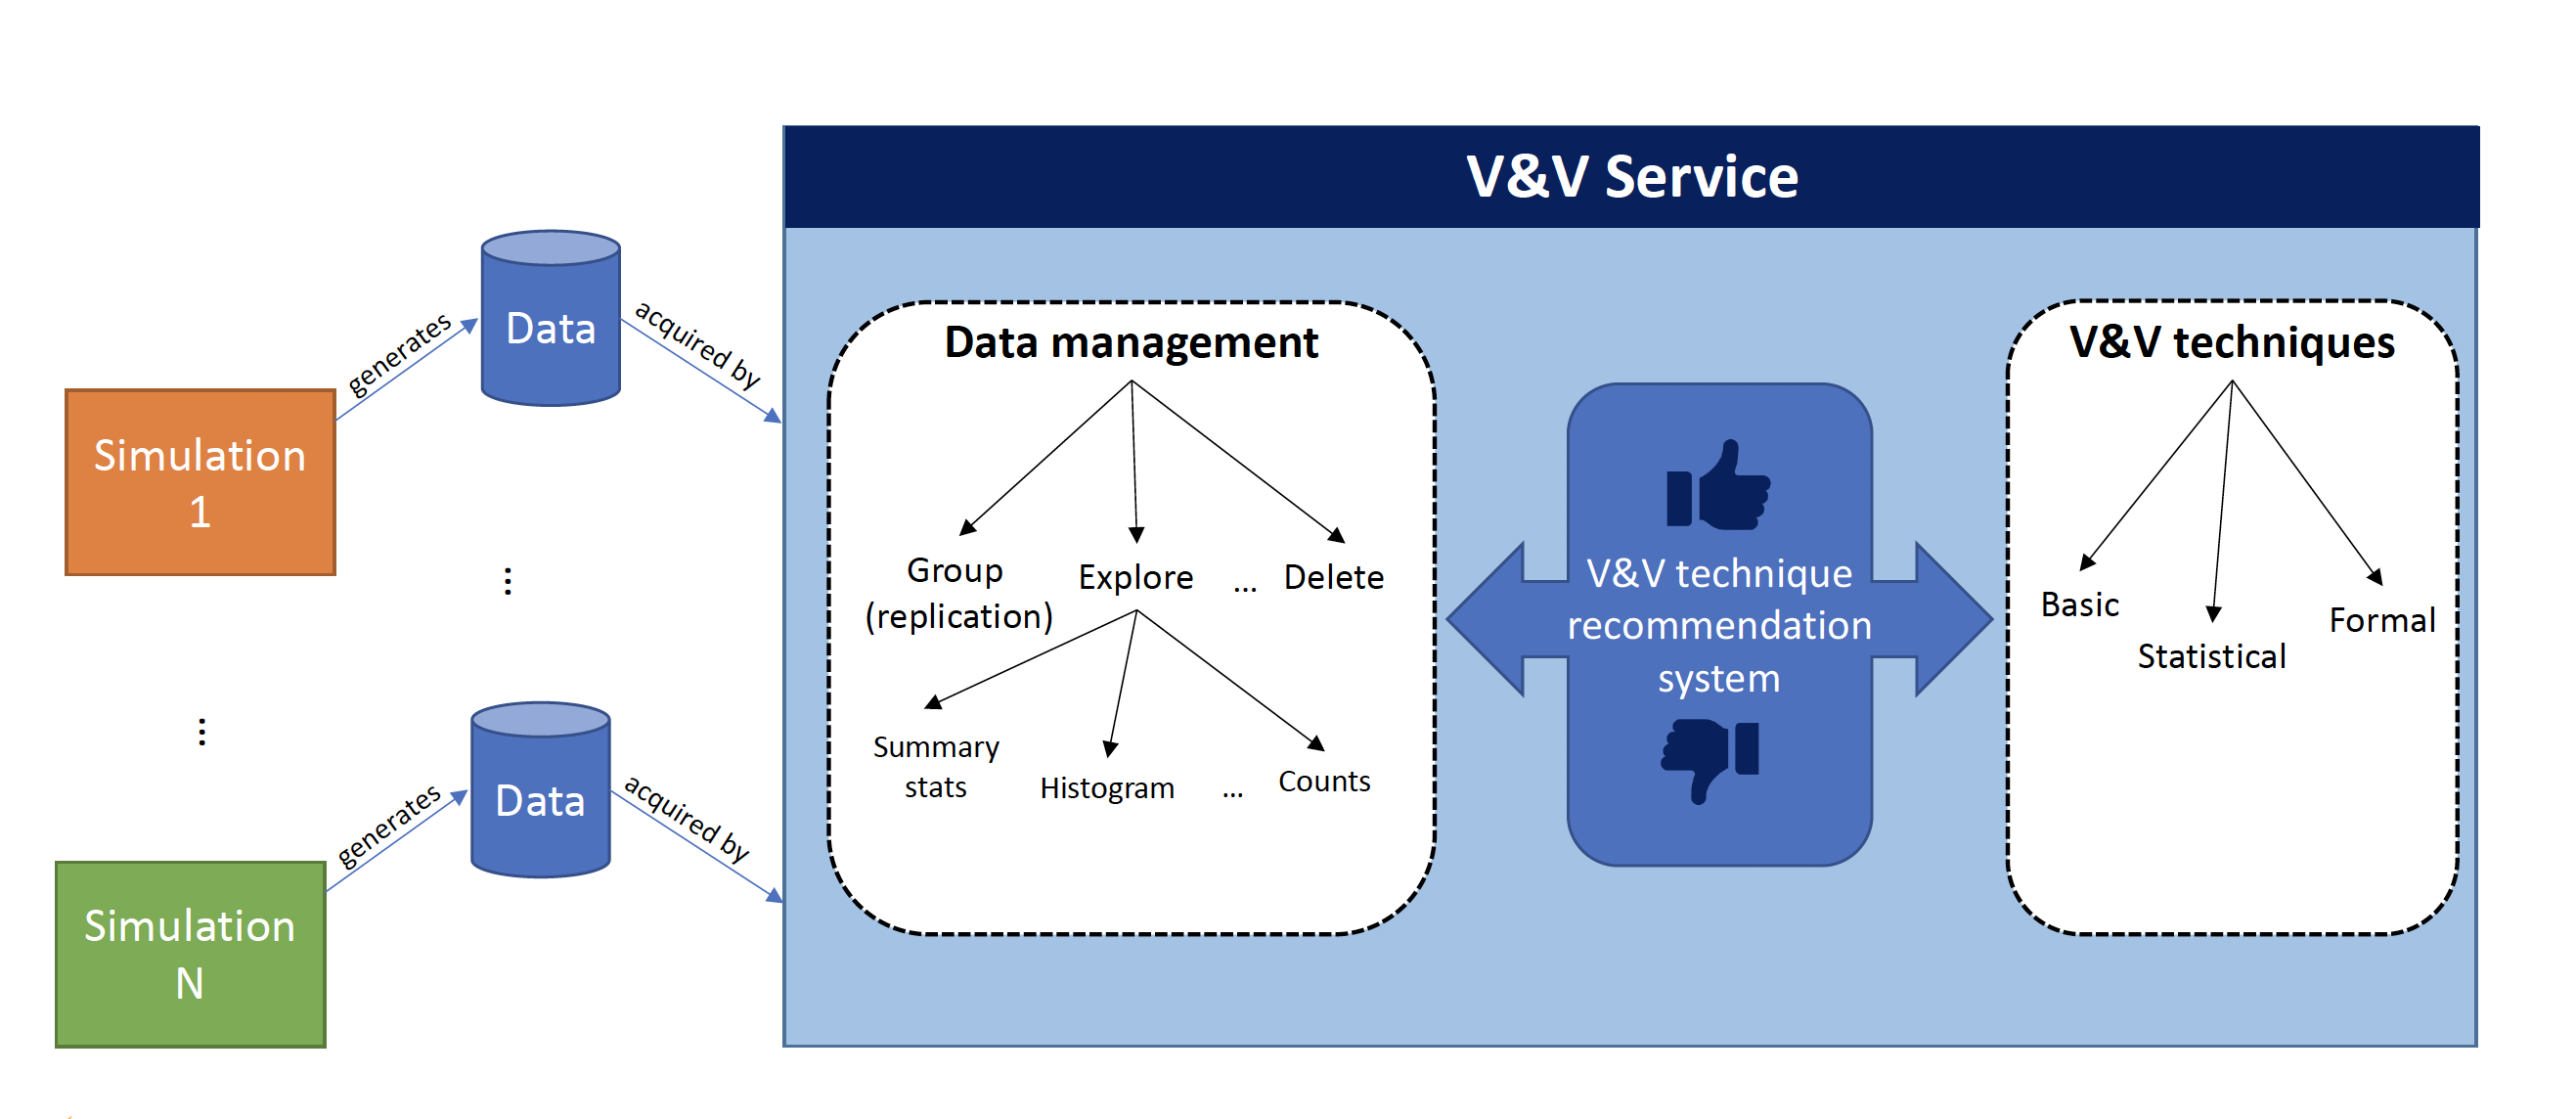 V&V as a Service